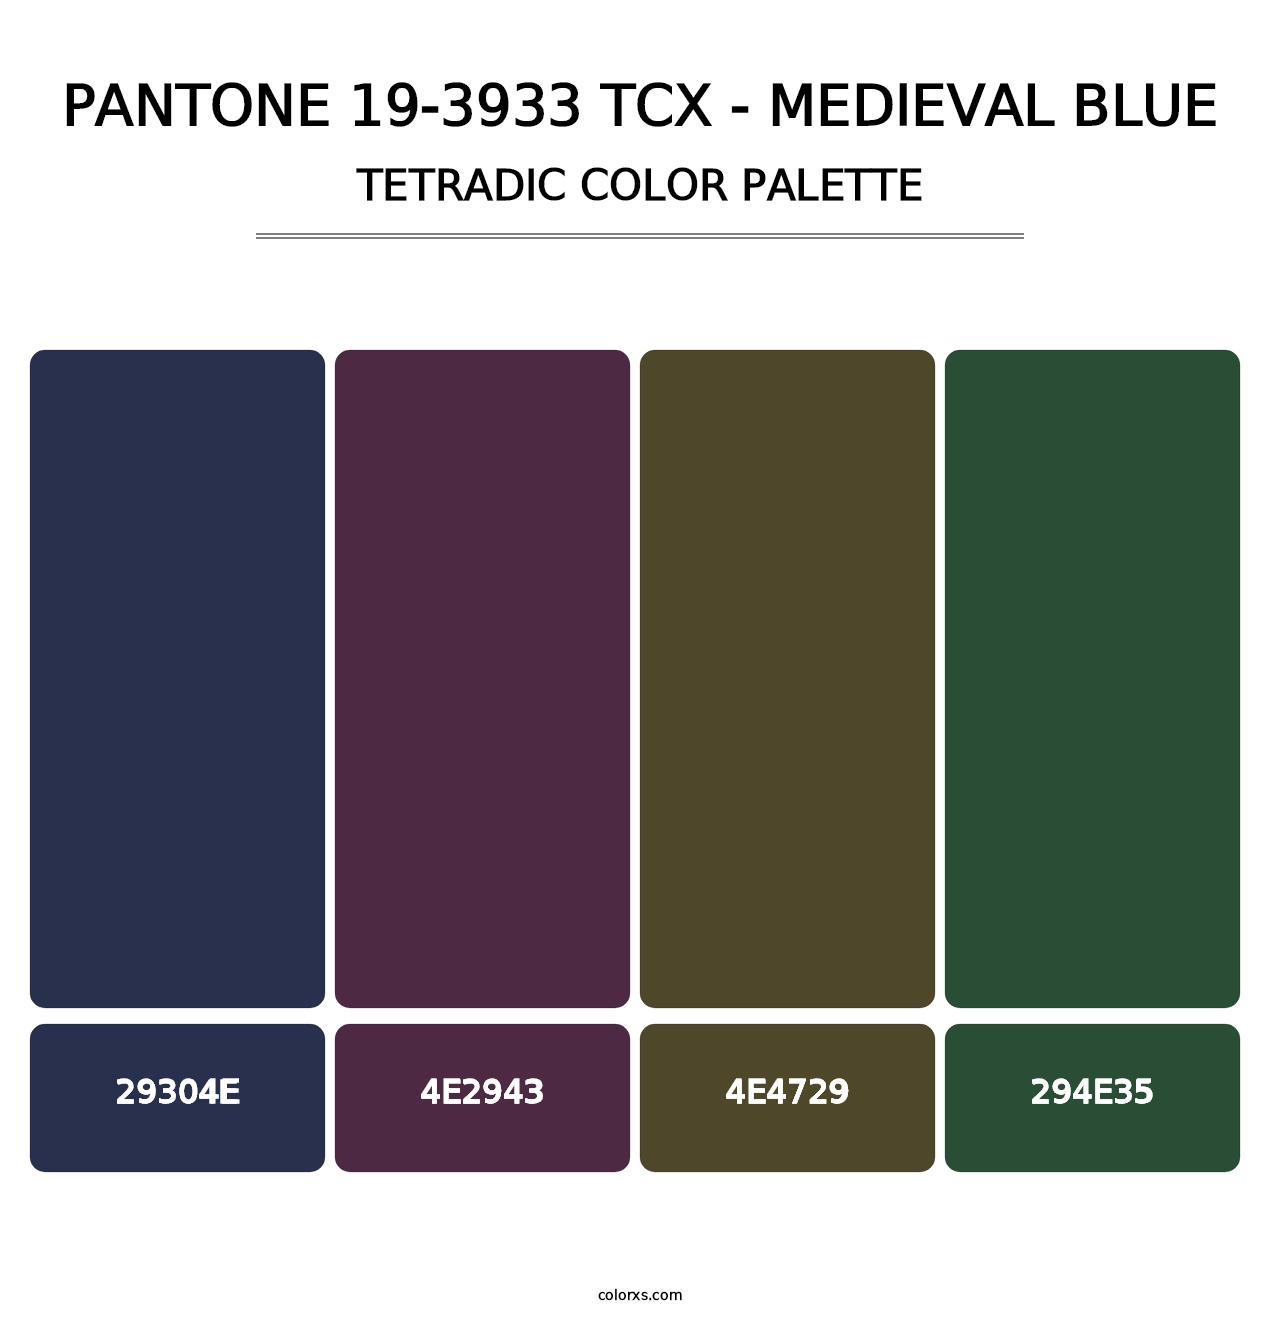 PANTONE 19-3933 TCX - Medieval Blue - Tetradic Color Palette